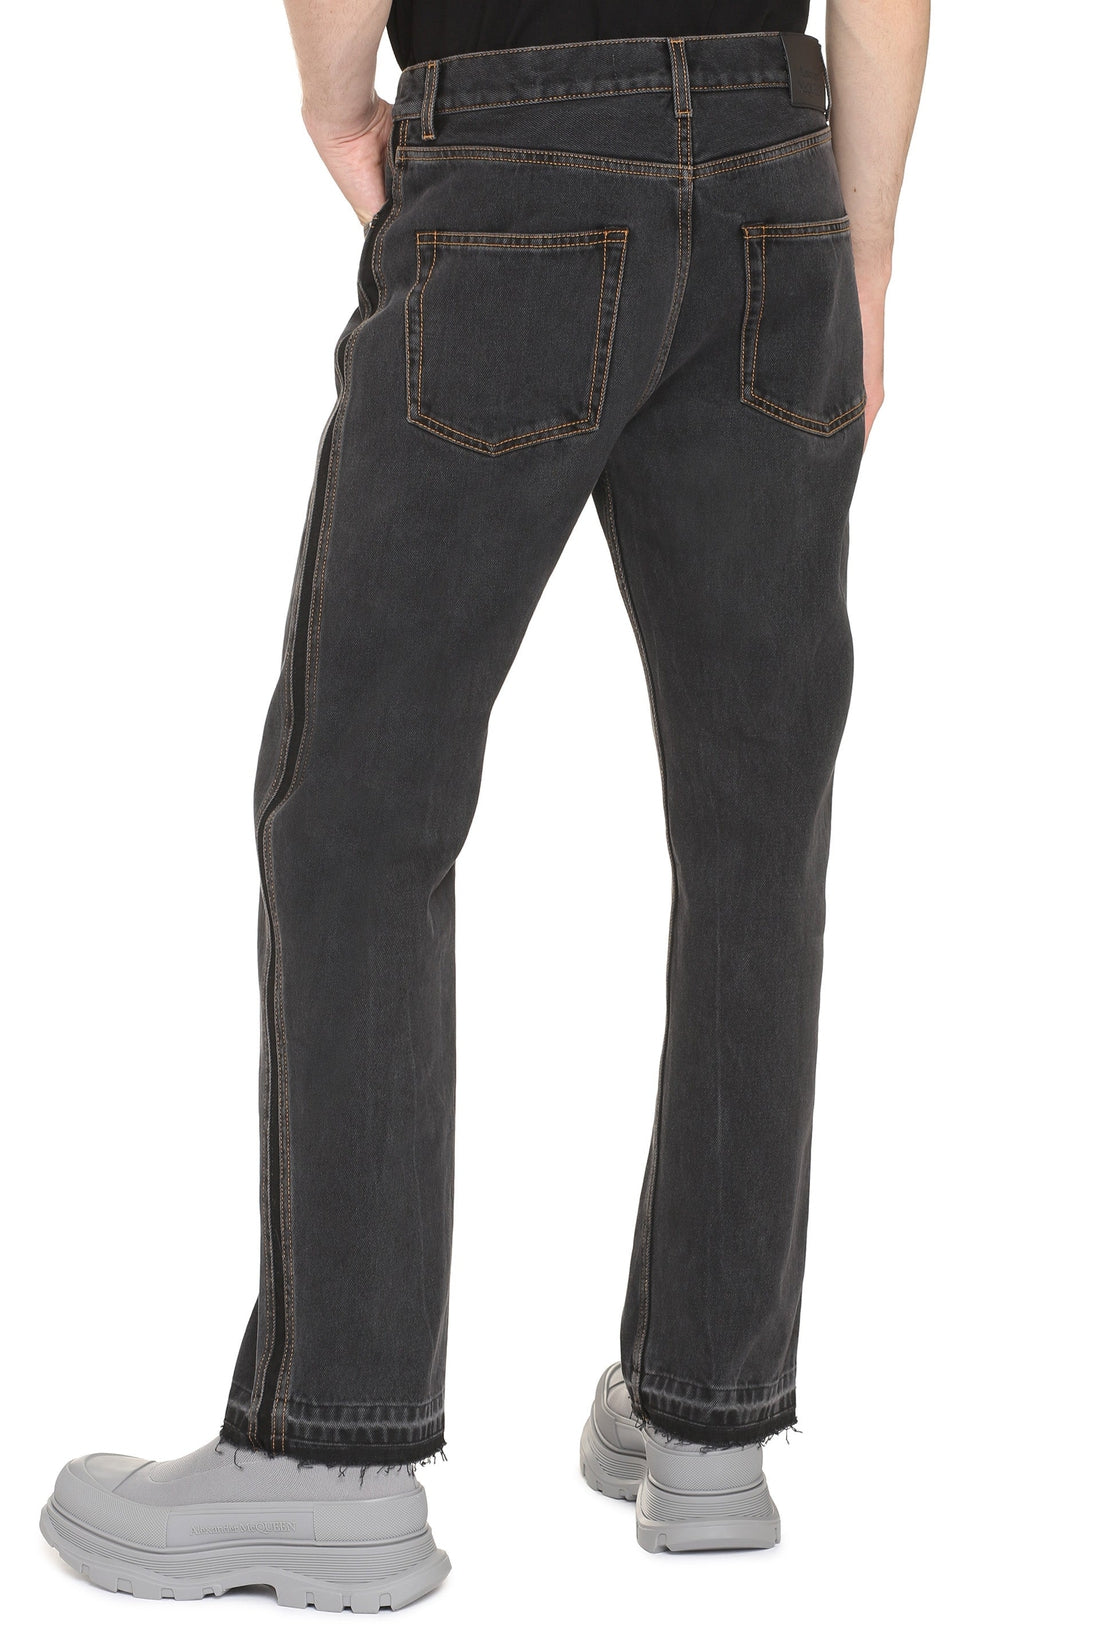 Alexander McQueen-OUTLET-SALE-5-pocket jeans-ARCHIVIST